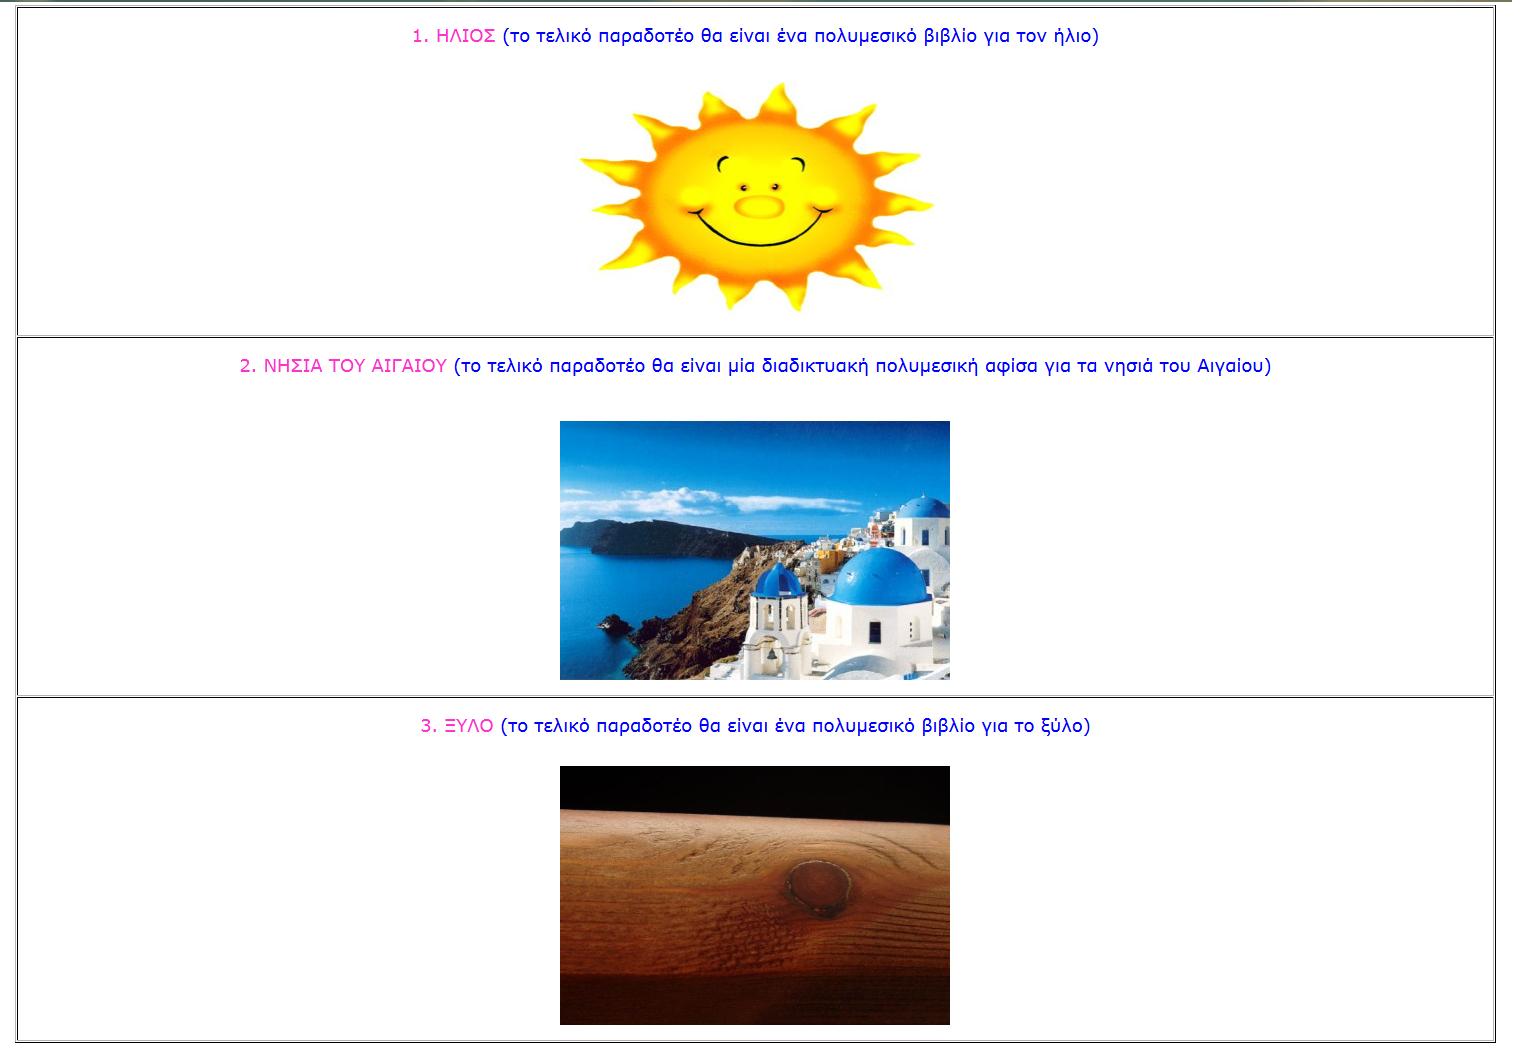 Μετέπειτα, οι μαθητές ενημερώνονται για το ποια είναι τα προτεινόμενα θέματα (ήλιος, νησιά του Αιγαίου, ξύλο) προς ομαδική